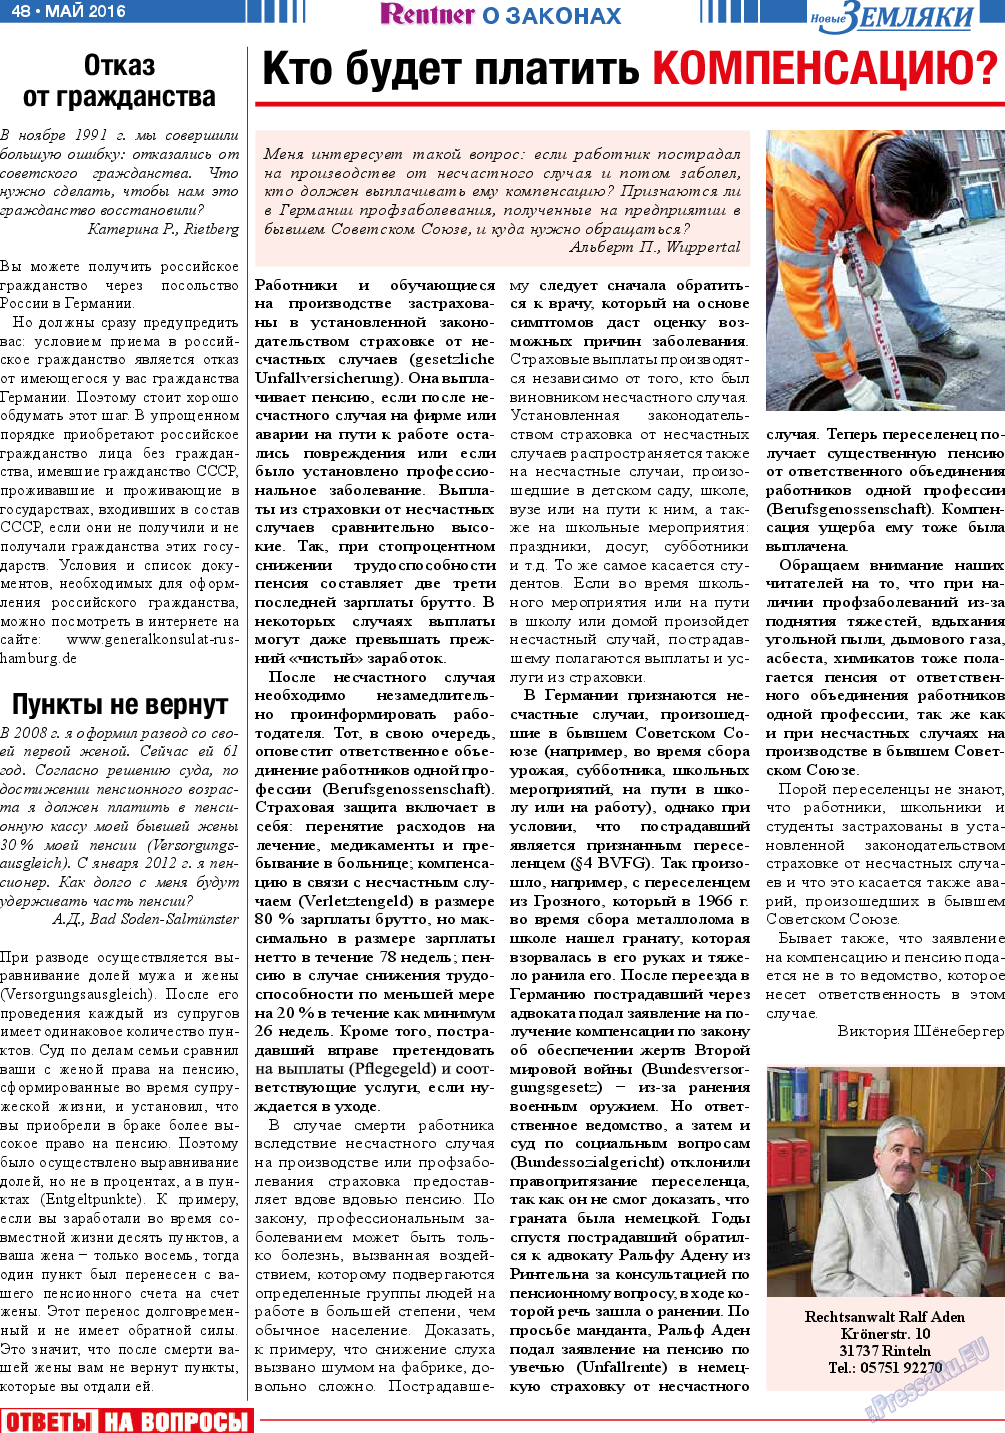 Новые Земляки, газета. 2016 №5 стр.48